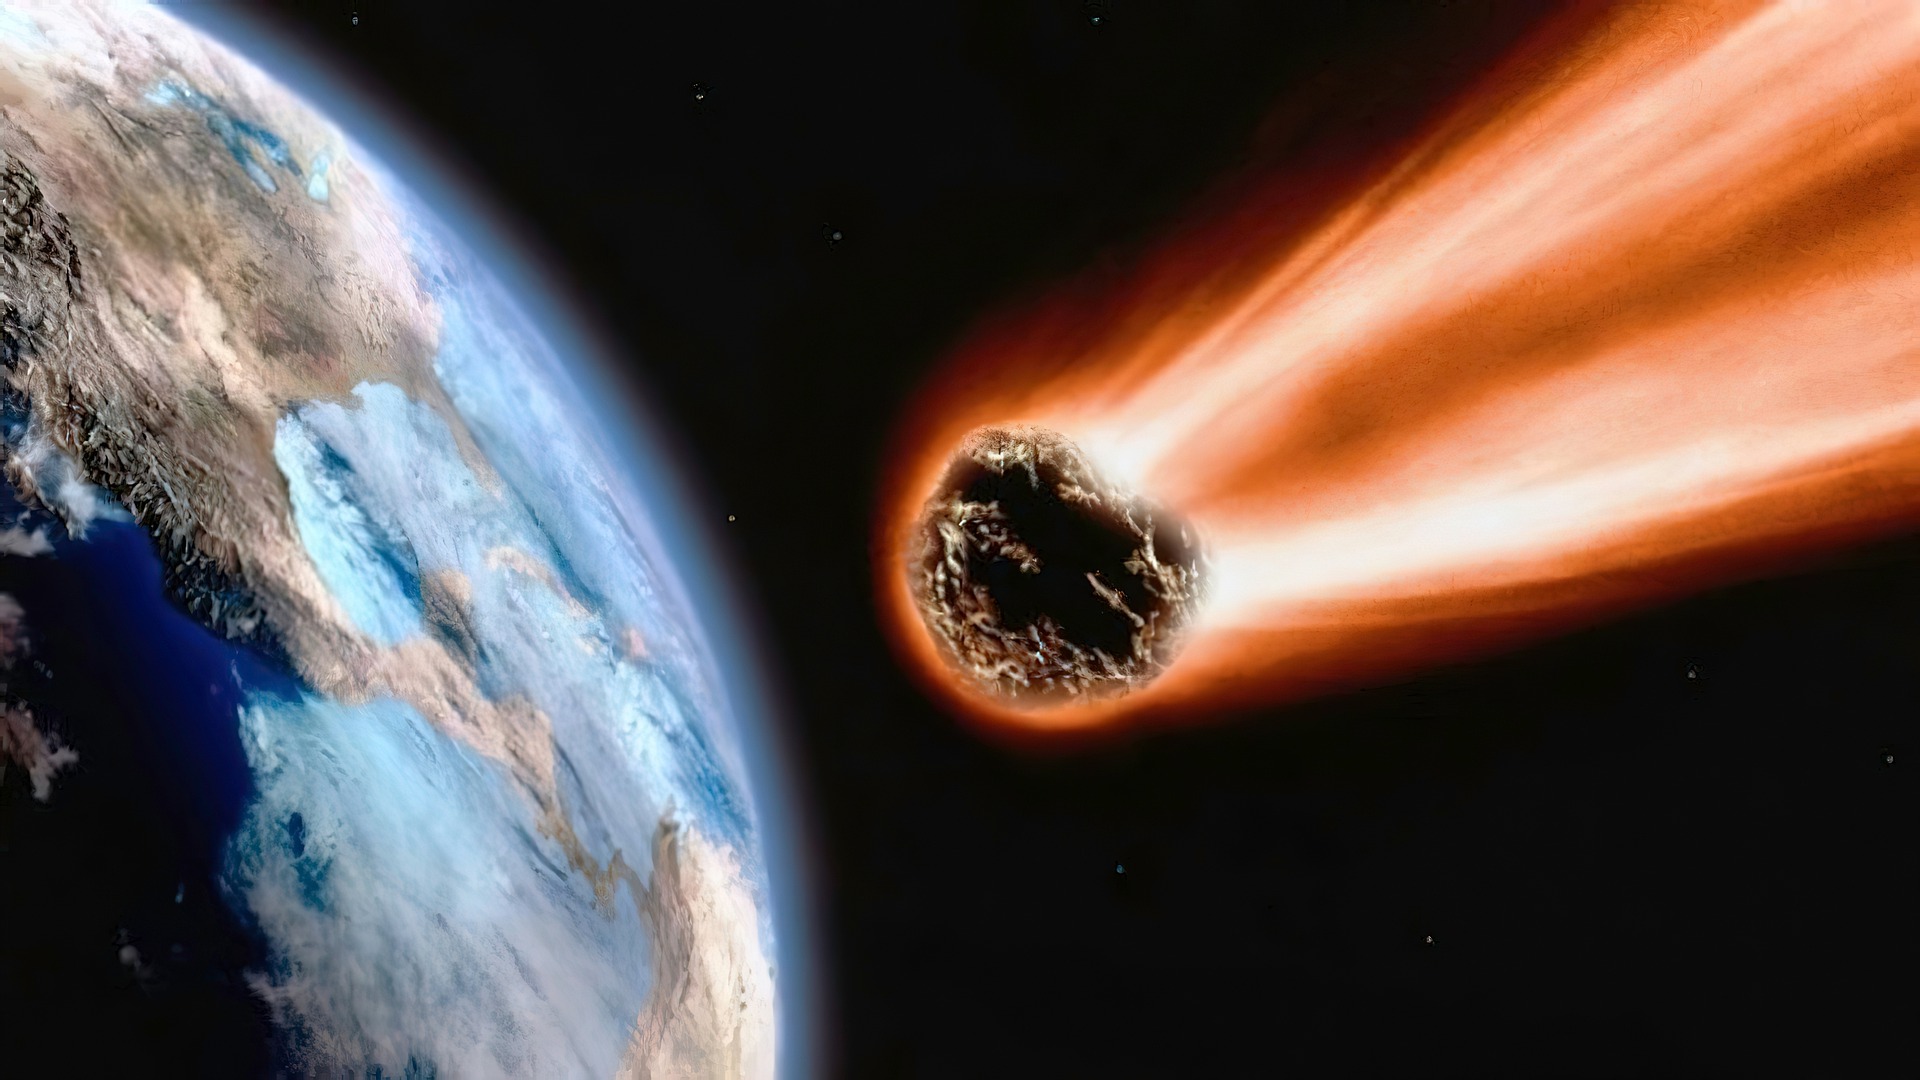 Голям астероид, който може да помете цял град, ще премине